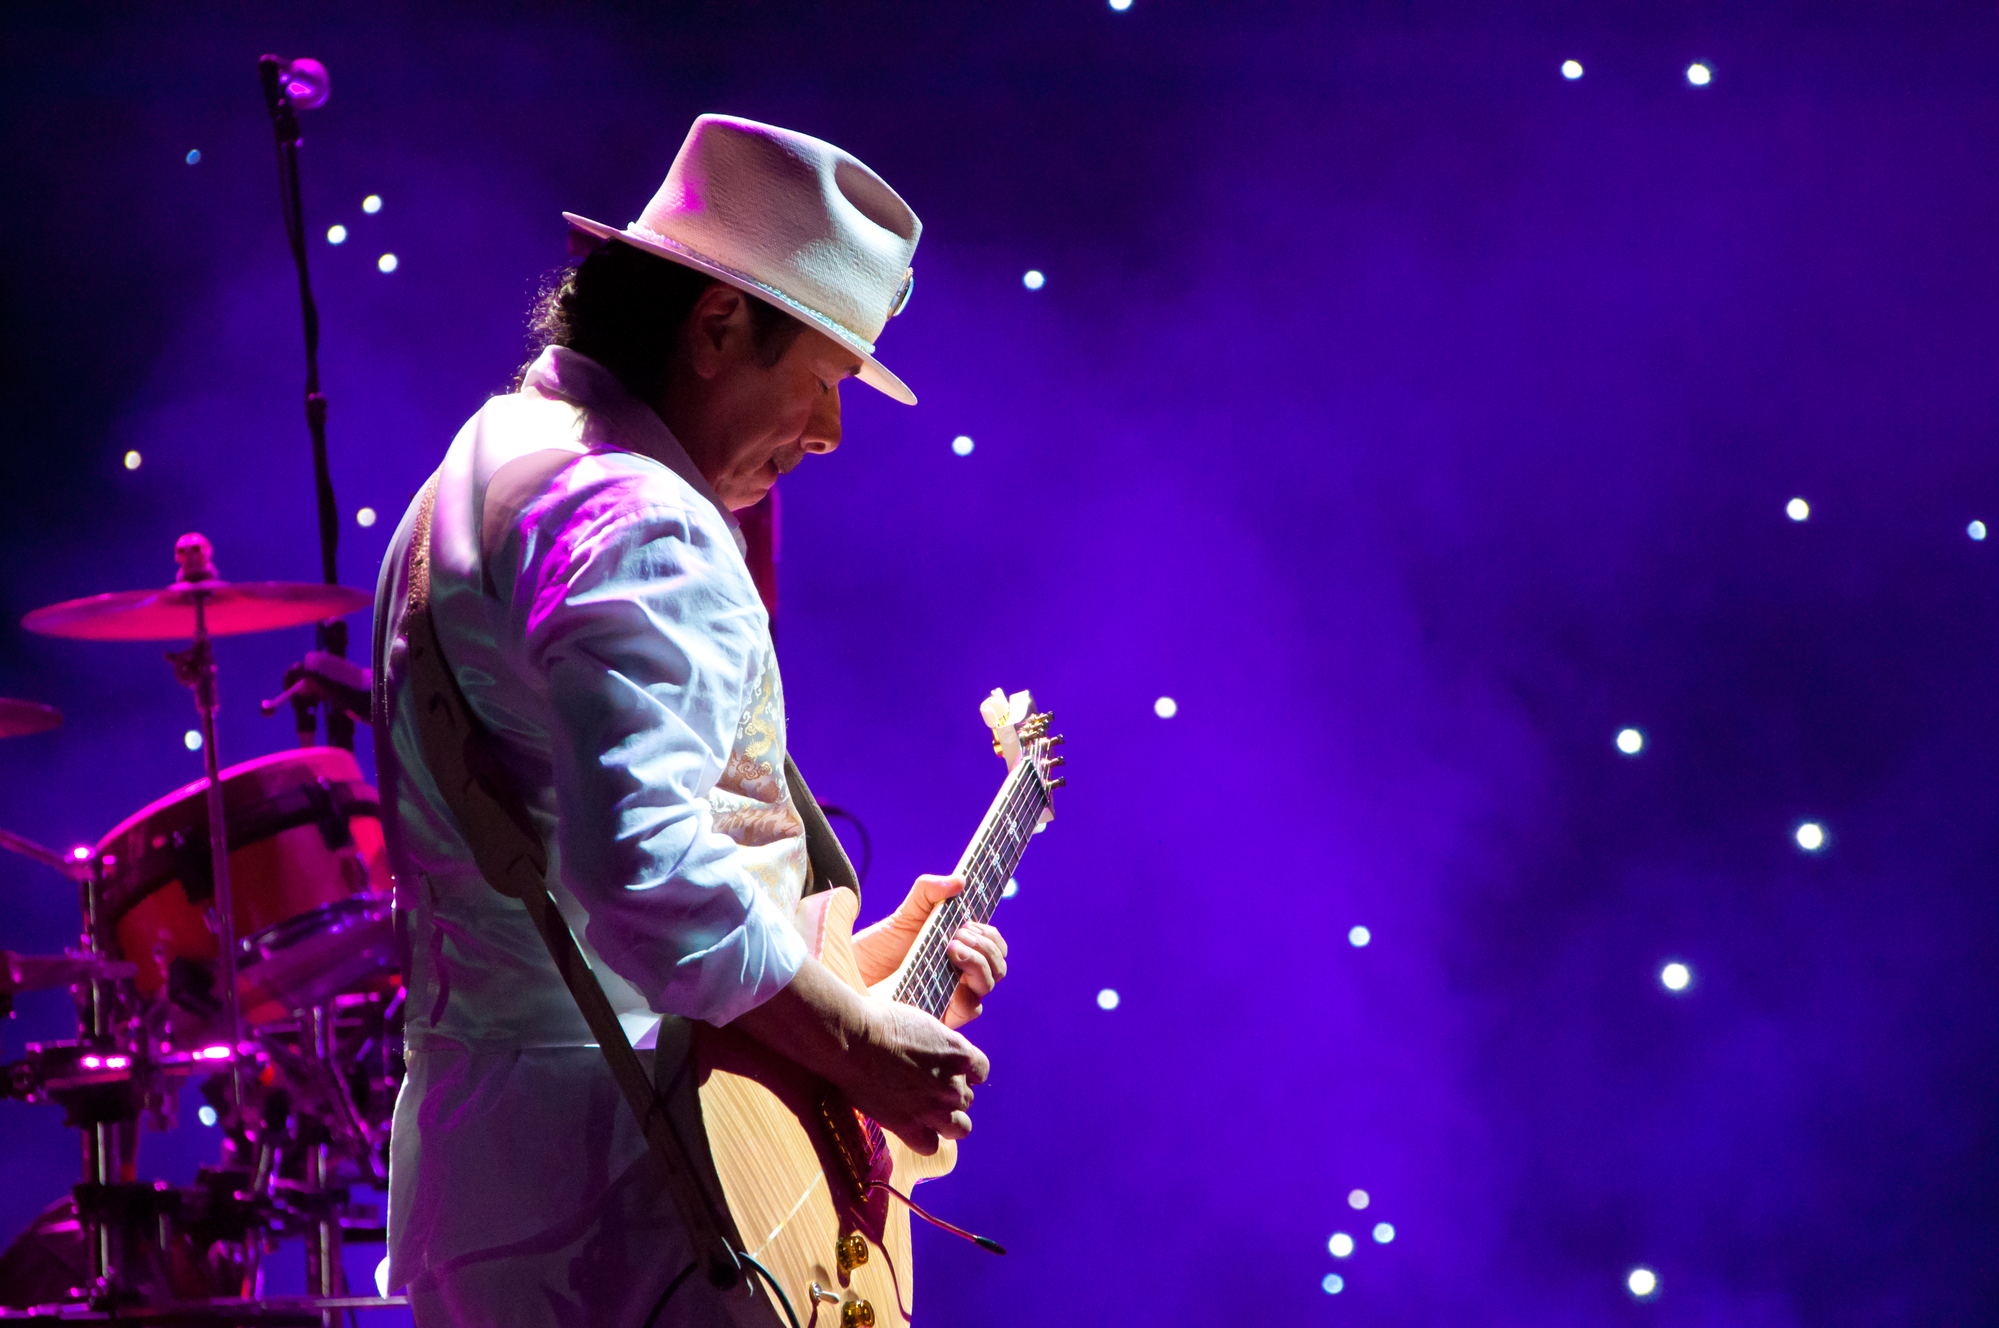 Faimosul chitarist Carlos Santana a leşinat pe scenă în timpul unui concert